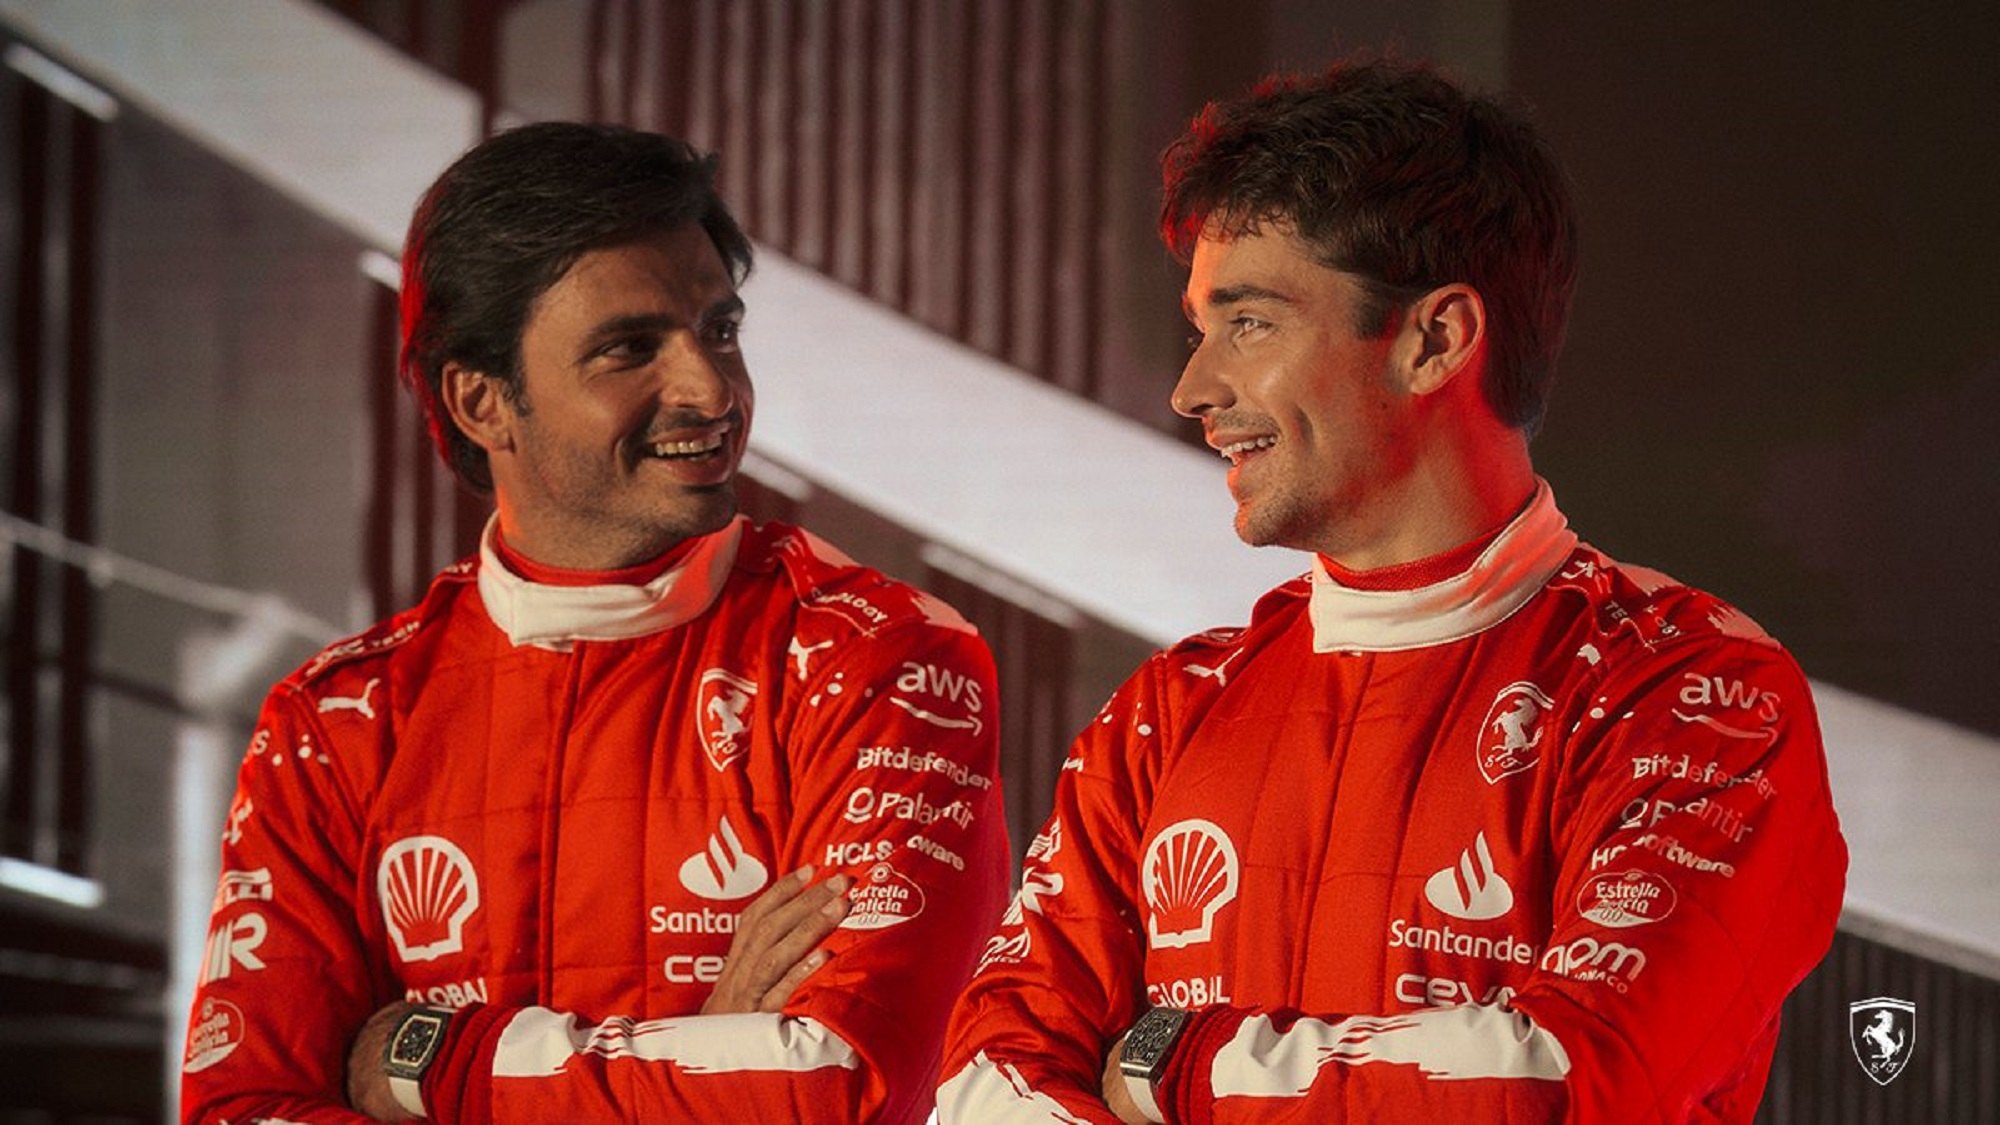 El Ferrari de Carlos Sainz y Leclerc cambia de color, adiós al rojo de toda la vida